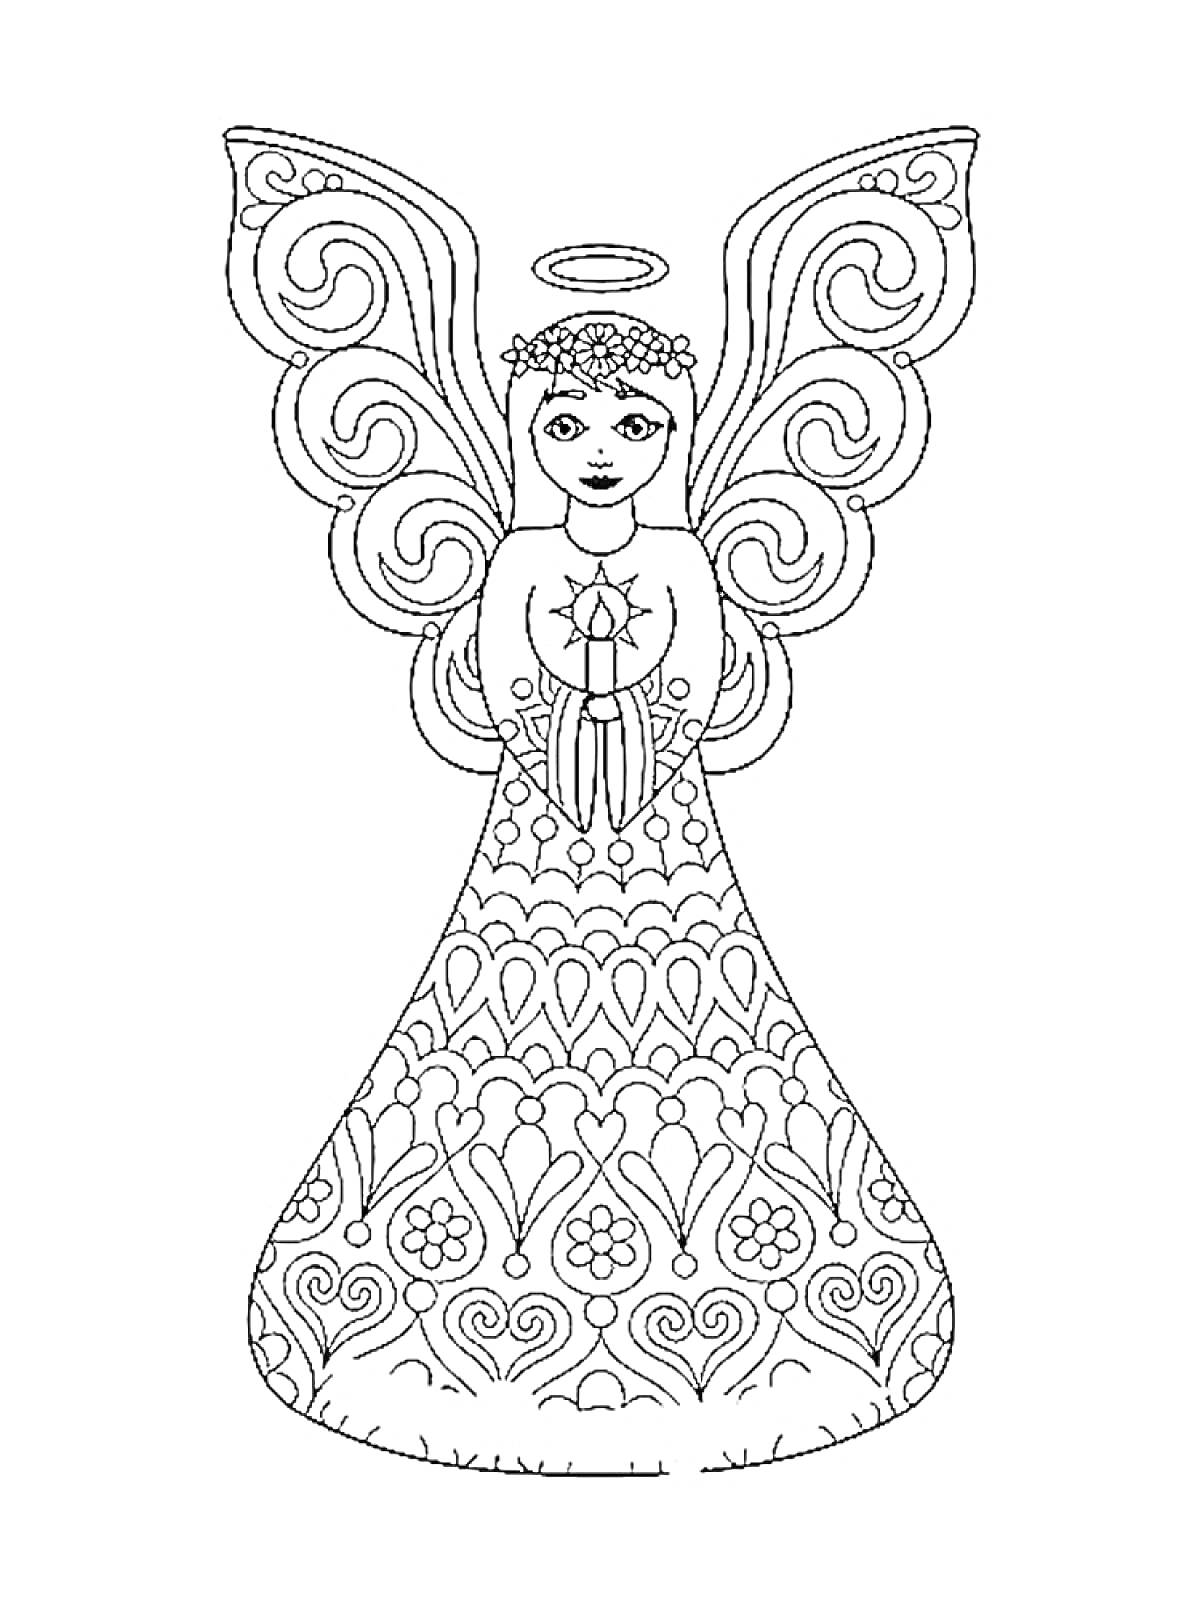 Раскраска Ангел с узорчатым платьем, цветком в руках и нимбом